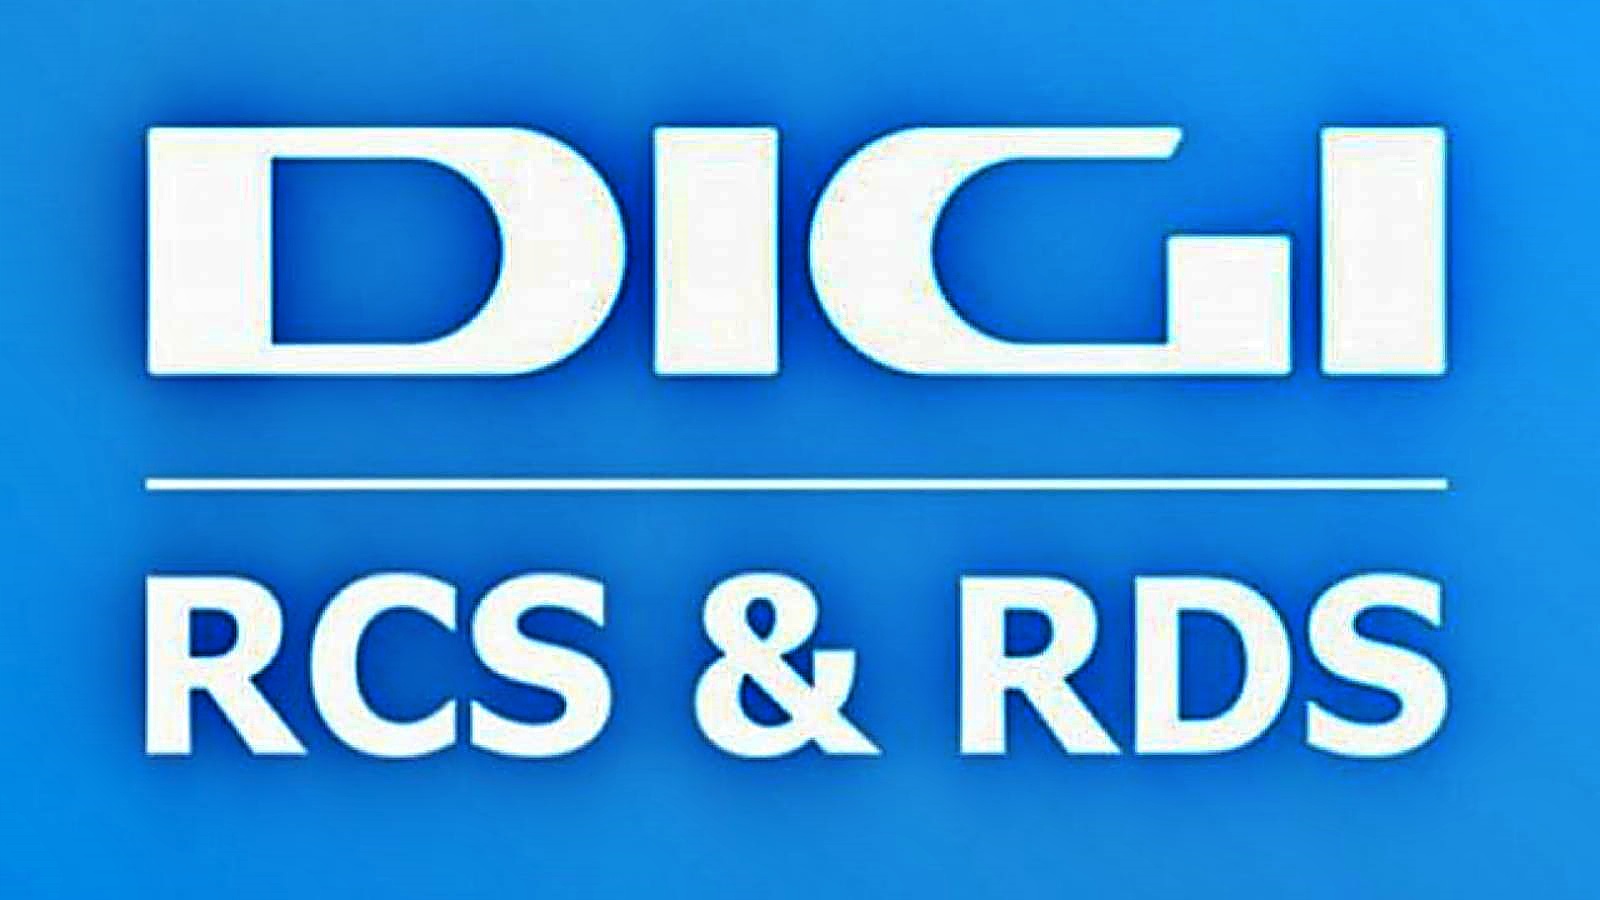 DIGI RCS & RDS Message MILLIONS Rumänen bieten jetzt KOSTENLOS an